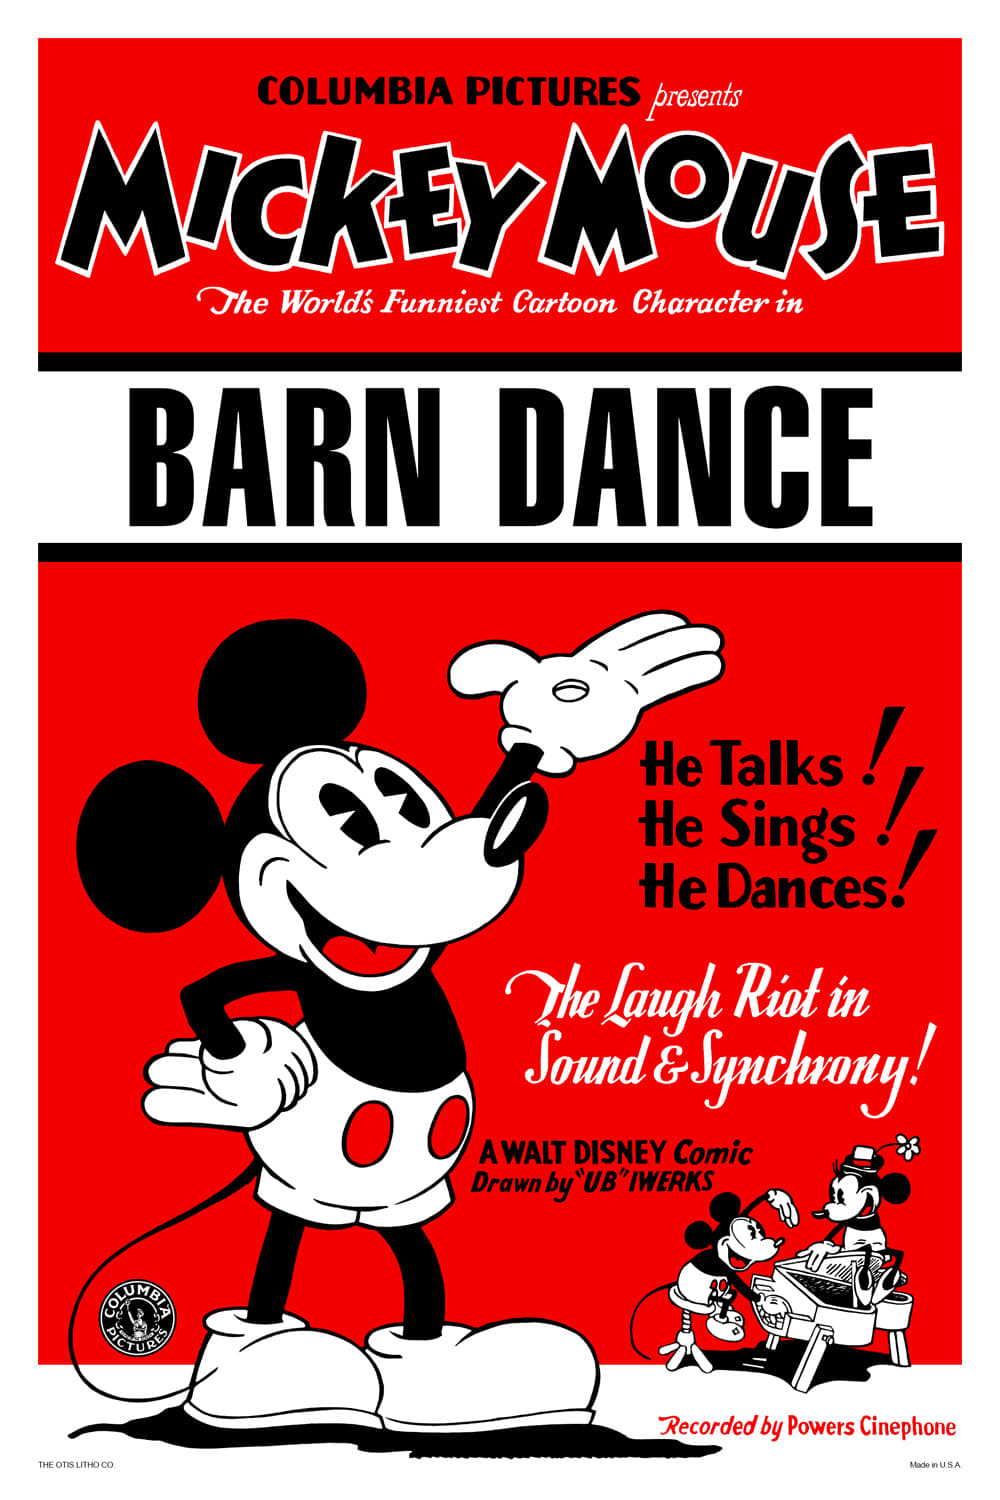 The Barn Dance (1929)